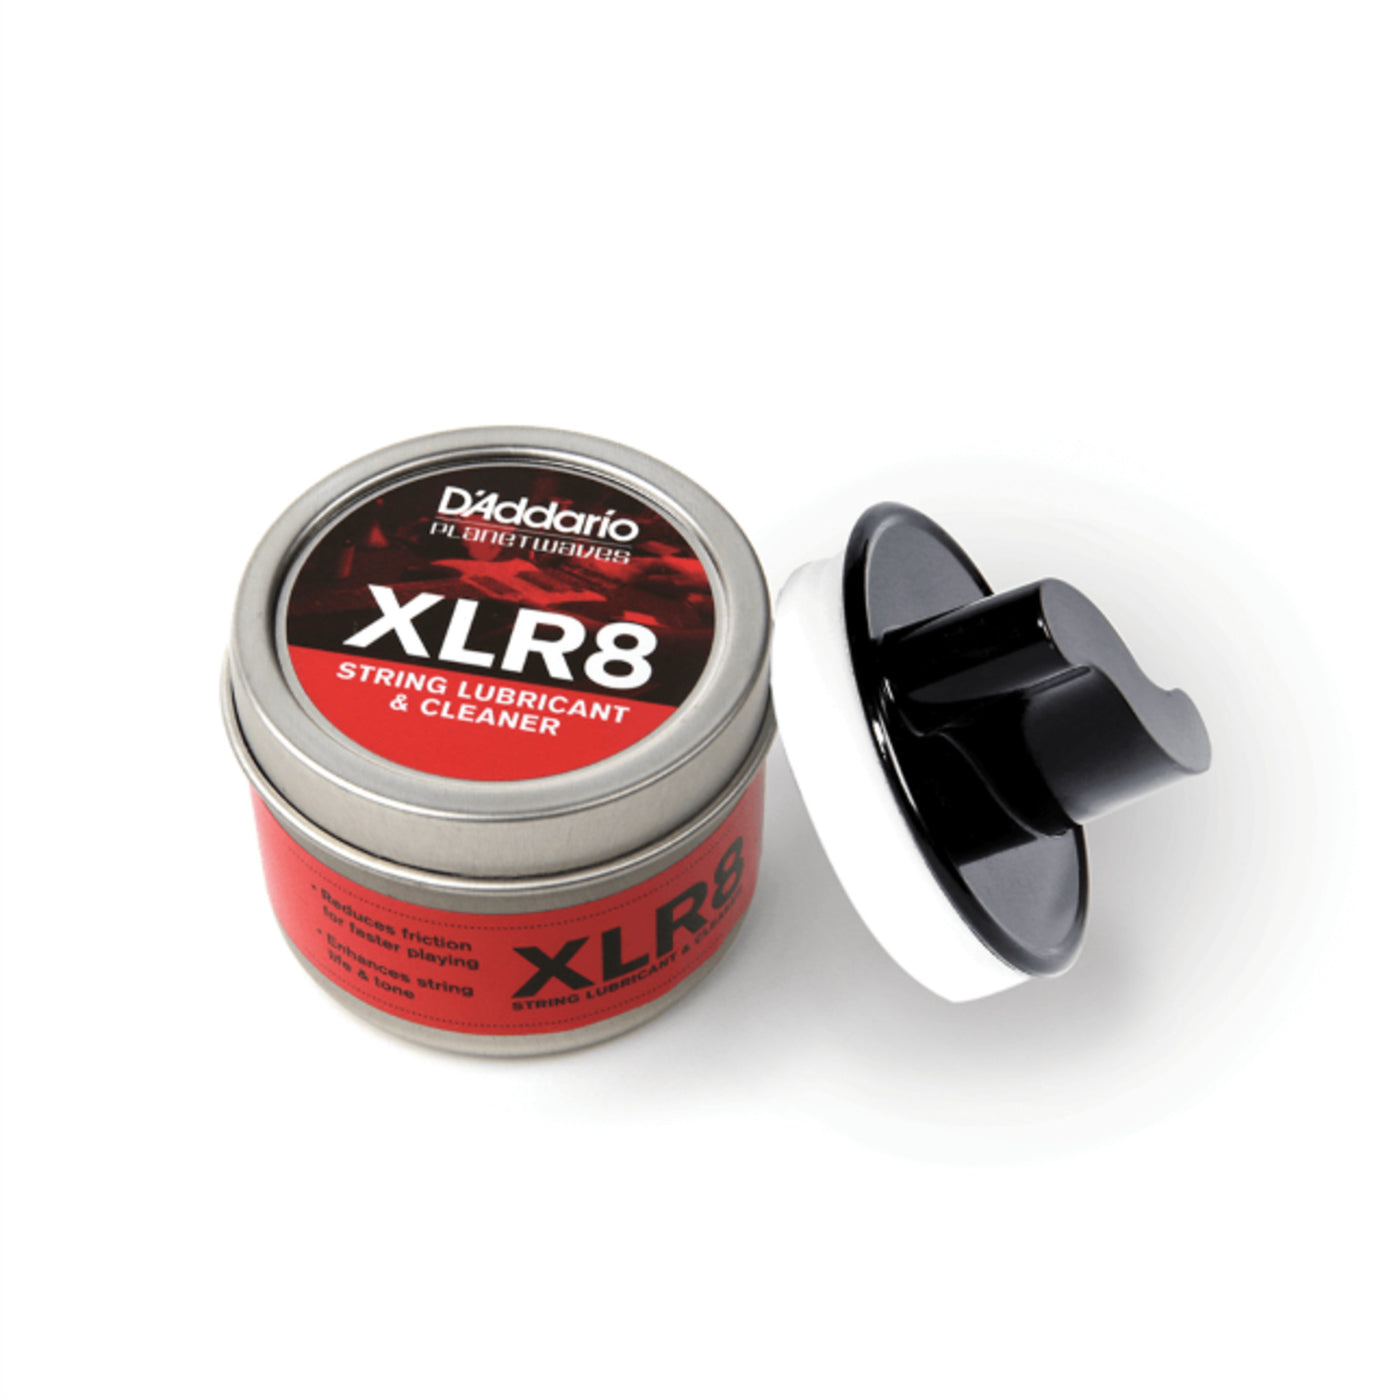 D'Addario XLR8 String Lubricant/Cleaner (PW-XLR8-01)